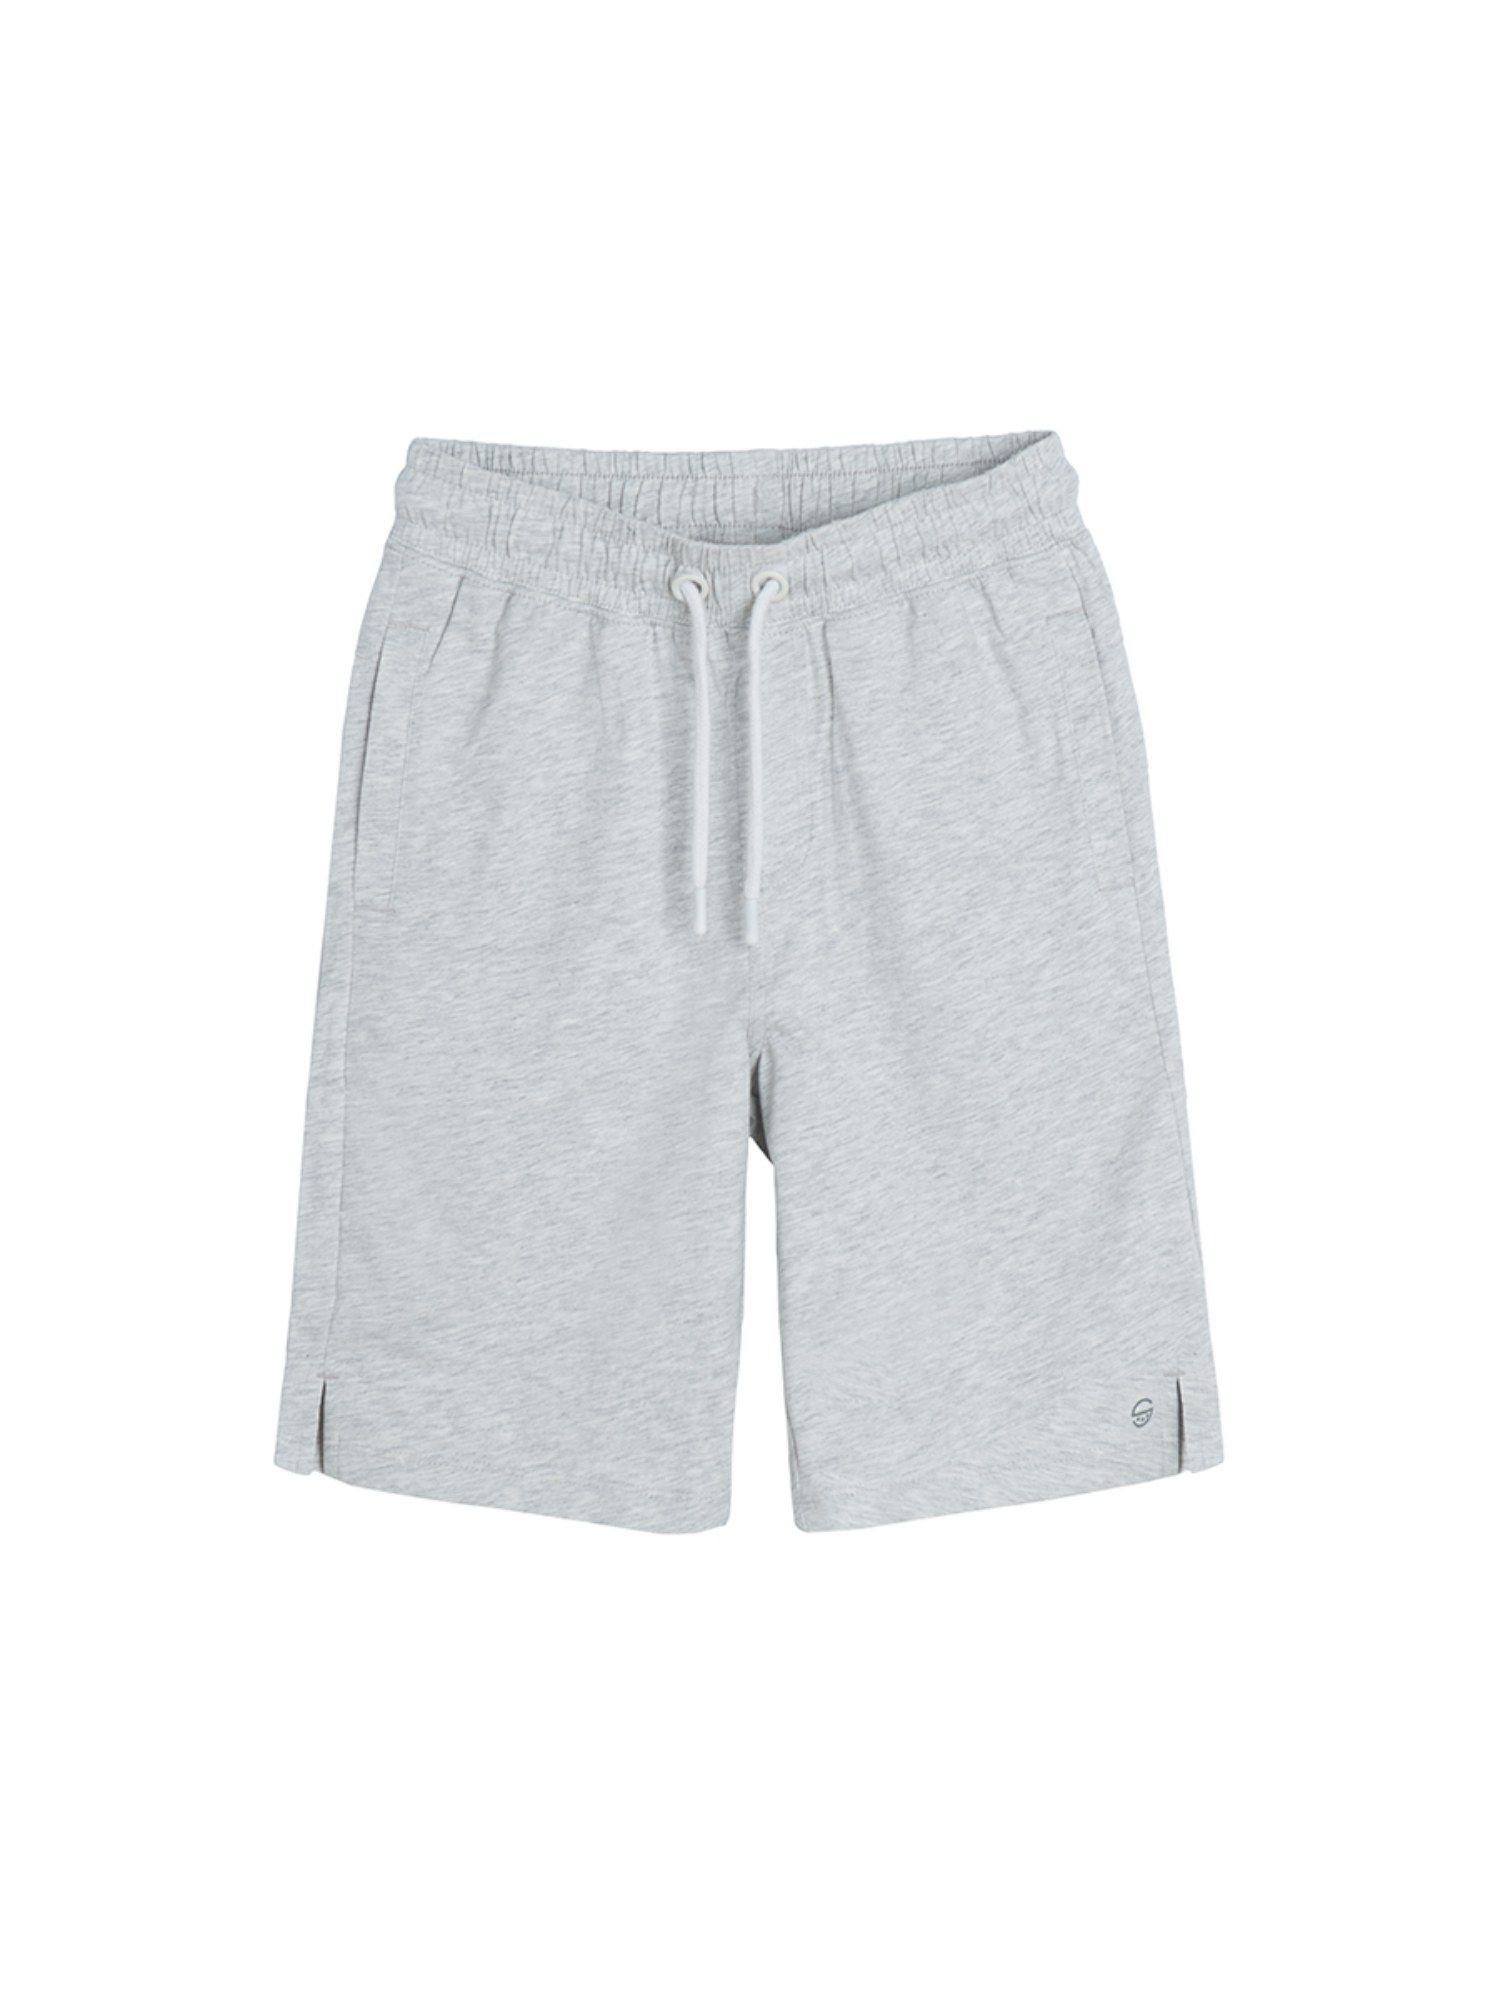 smyk boys grey solid shorts